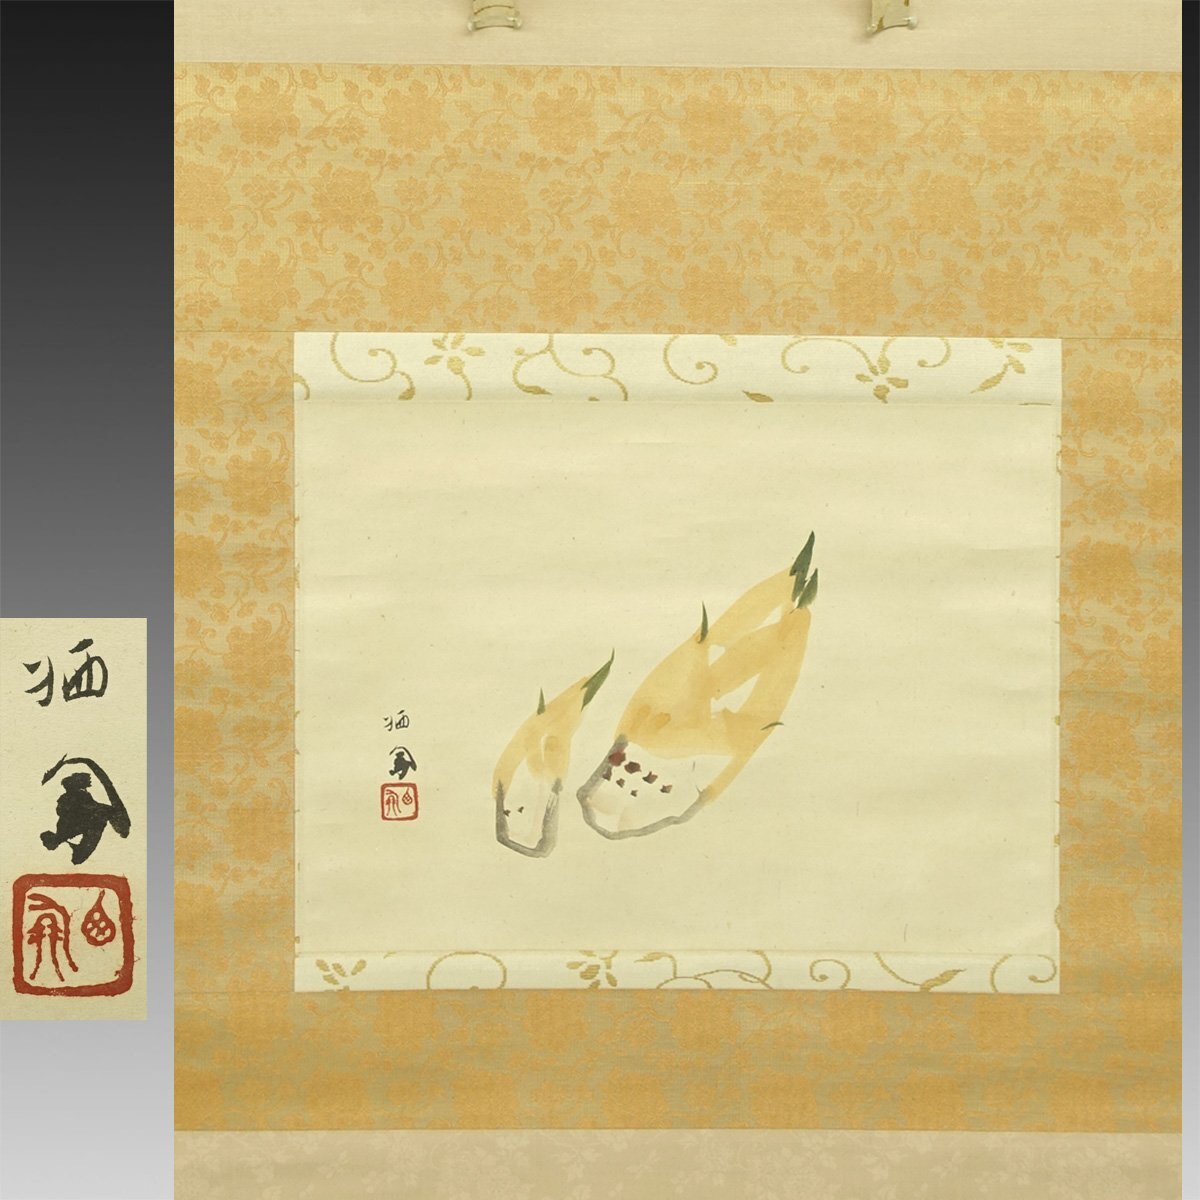 [प्रामाणिक कार्य] किमोन◆ ताकेउची सेइहो बांस की कोंपलें (बांस की कोंपलें) 1 चौड़ाई पुरानी लिखावट पुराना दस्तावेज़ पुरानी किताब जापानी पेंटिंग आधुनिक पेंटिंग कचुआन संस्कृति का आदेश प्राप्तकर्ता चीनी पेंटिंग चाय समारोह क्योटो ताइशो-शोवा, कलाकृति, किताब, लटका हुआ स्क्रॉल